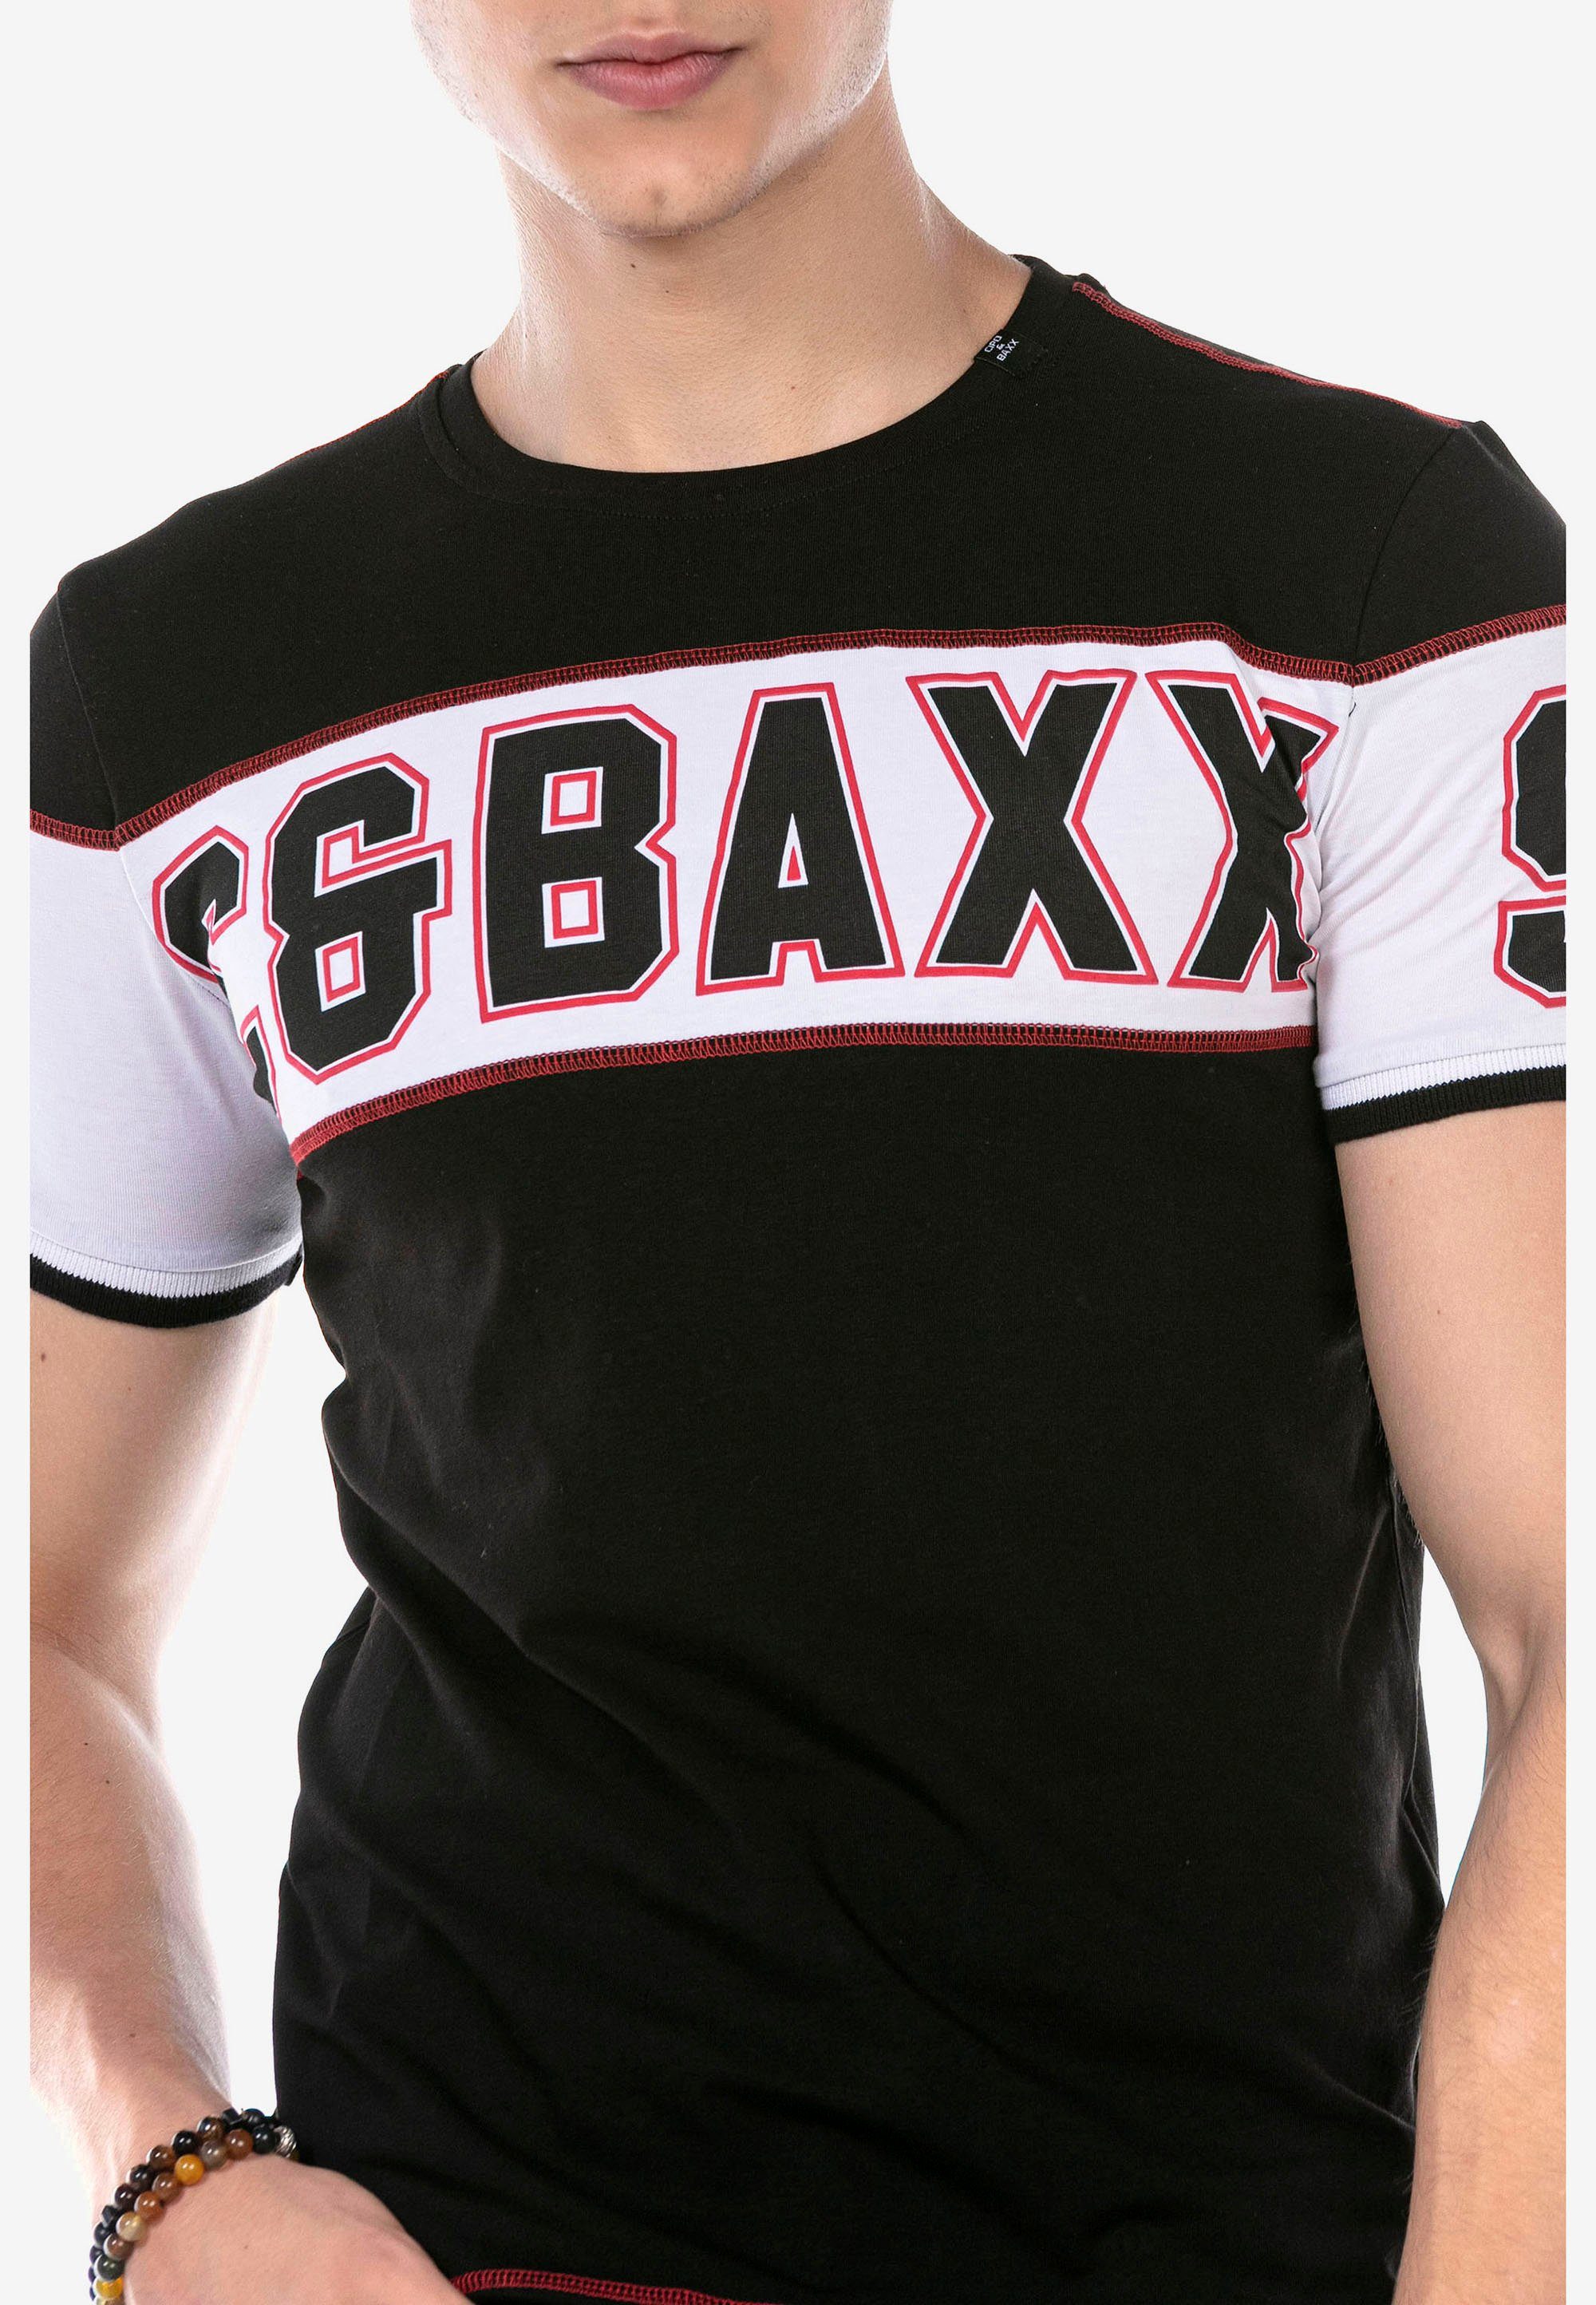 & auffälligem mit Baxx T-Shirt Cipo schwarz Print